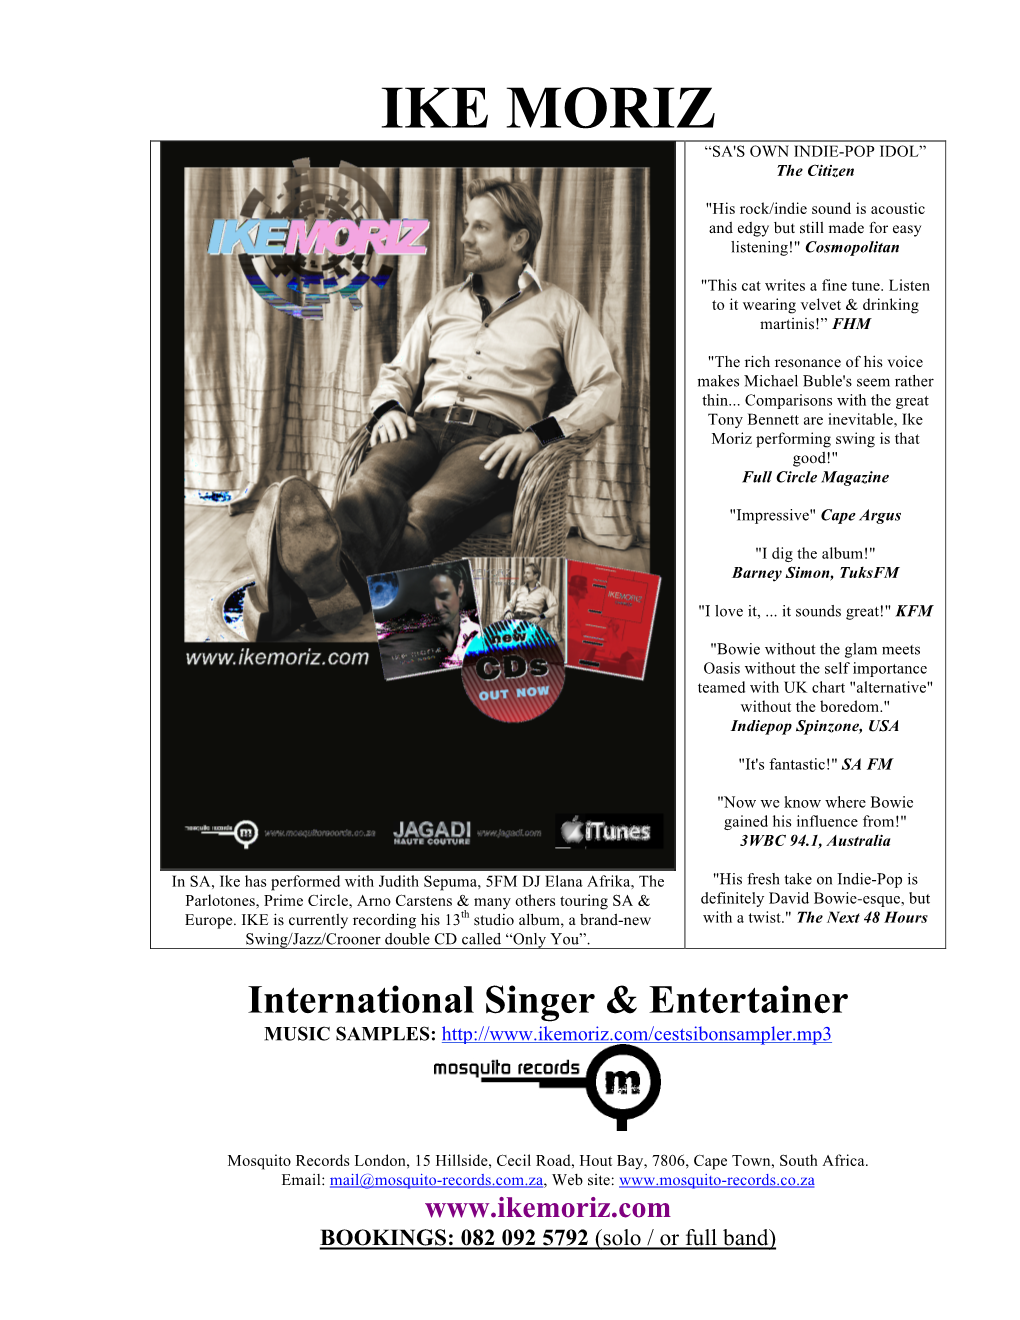 International Singer & Entertainer